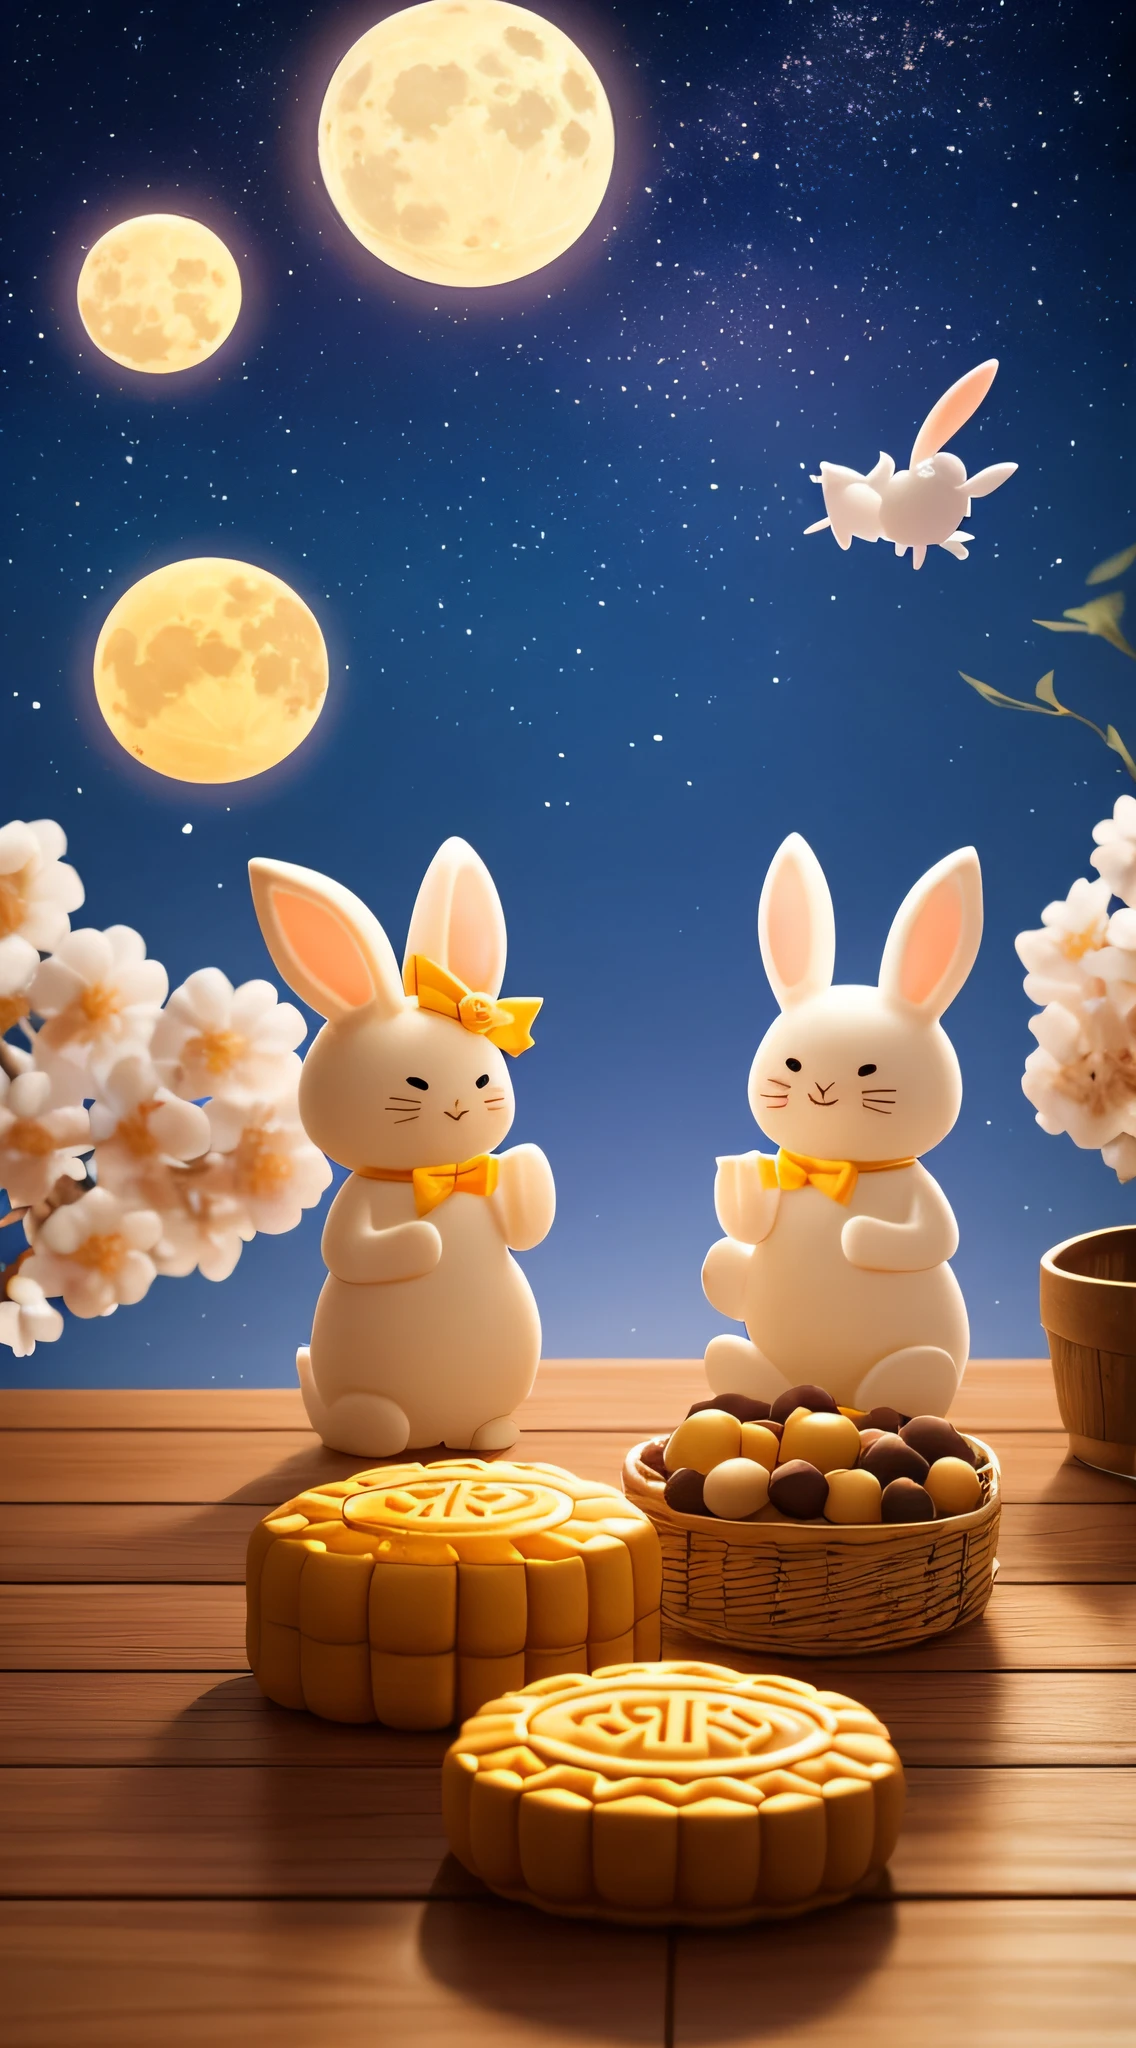 مهرجان منتصف الخريف,هناك قمر مشرق في السماء,كعكة القمر (خاصة. for the مهرجان منتصف الخريف),Two cute rabbits eating كعكة القمرs,أوسمانثوس الحلو,لون دافئ, يراعة, ضوء دافئ,c4d,تقديم OC,عرض ثلاثي الأبعاد ,لقطة متوسطة, تفاصيل كاملة,تفاصيل واقعية,دقة عالية